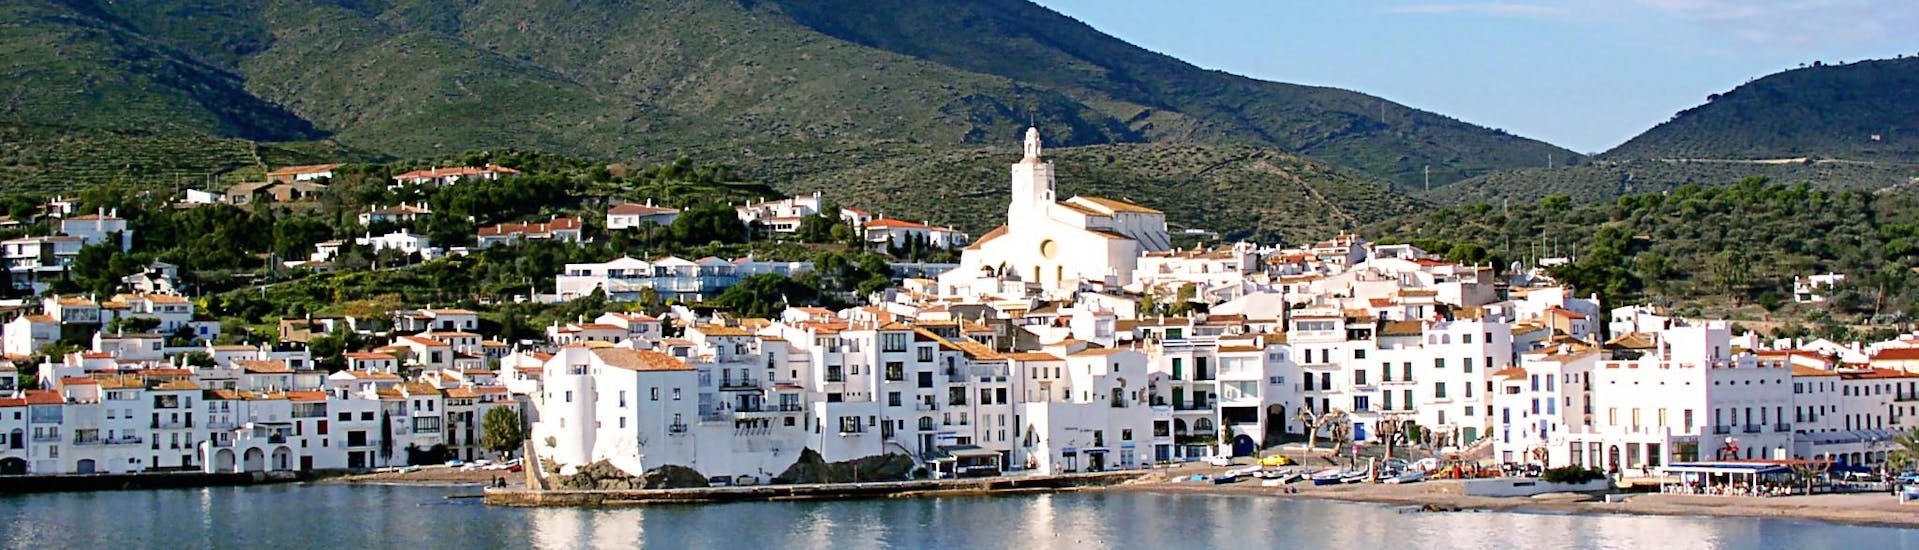 Vista de Cadaqués durante una de las excursiones en barco que ofrece Don Pancho.